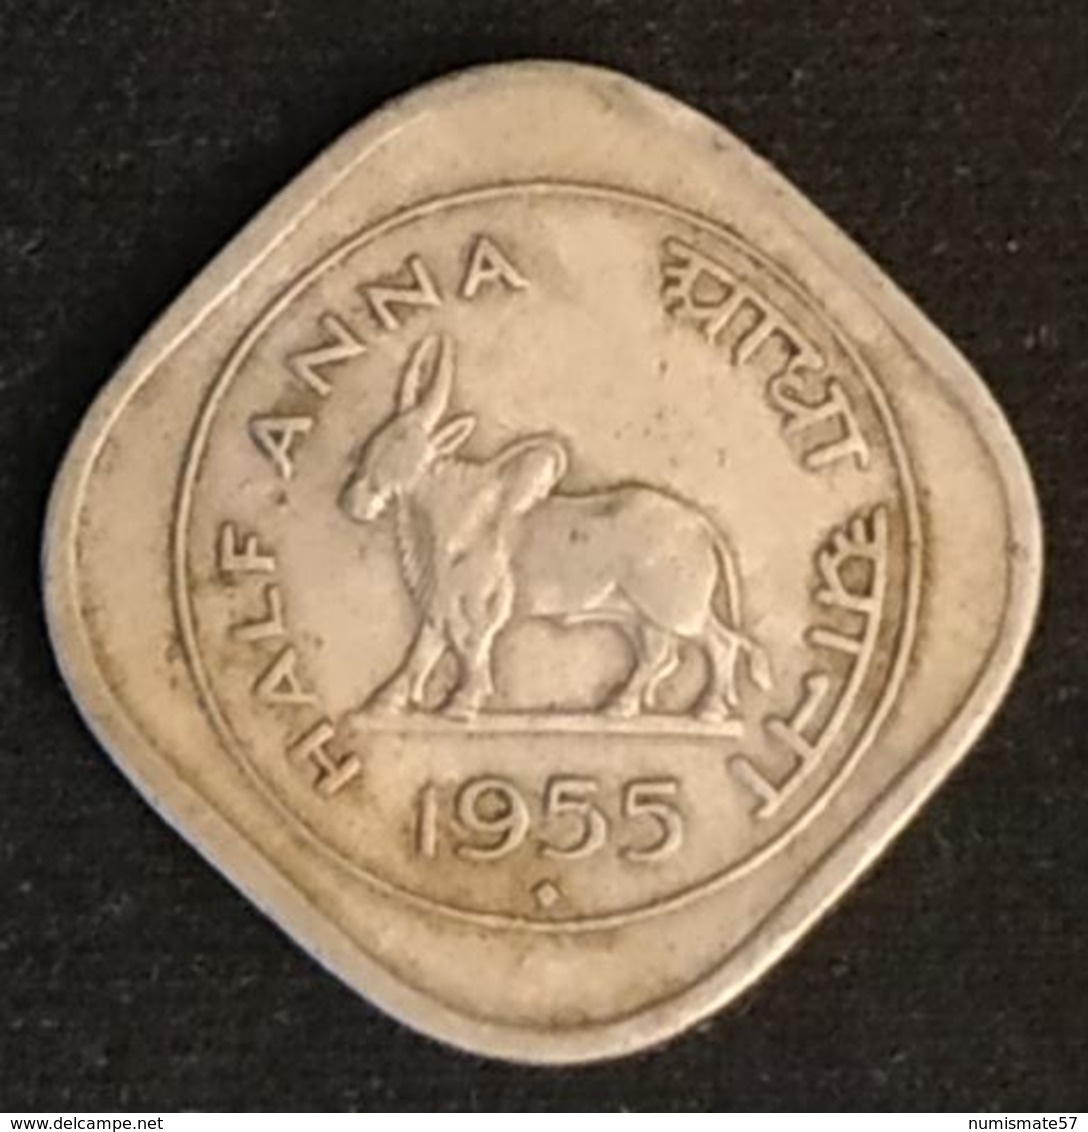 INDE - INDIA - ½ - 1/2 - HALF ANNA 1955 - KM 2.2 - ( Vache Sacrée ) - Mumbai - India